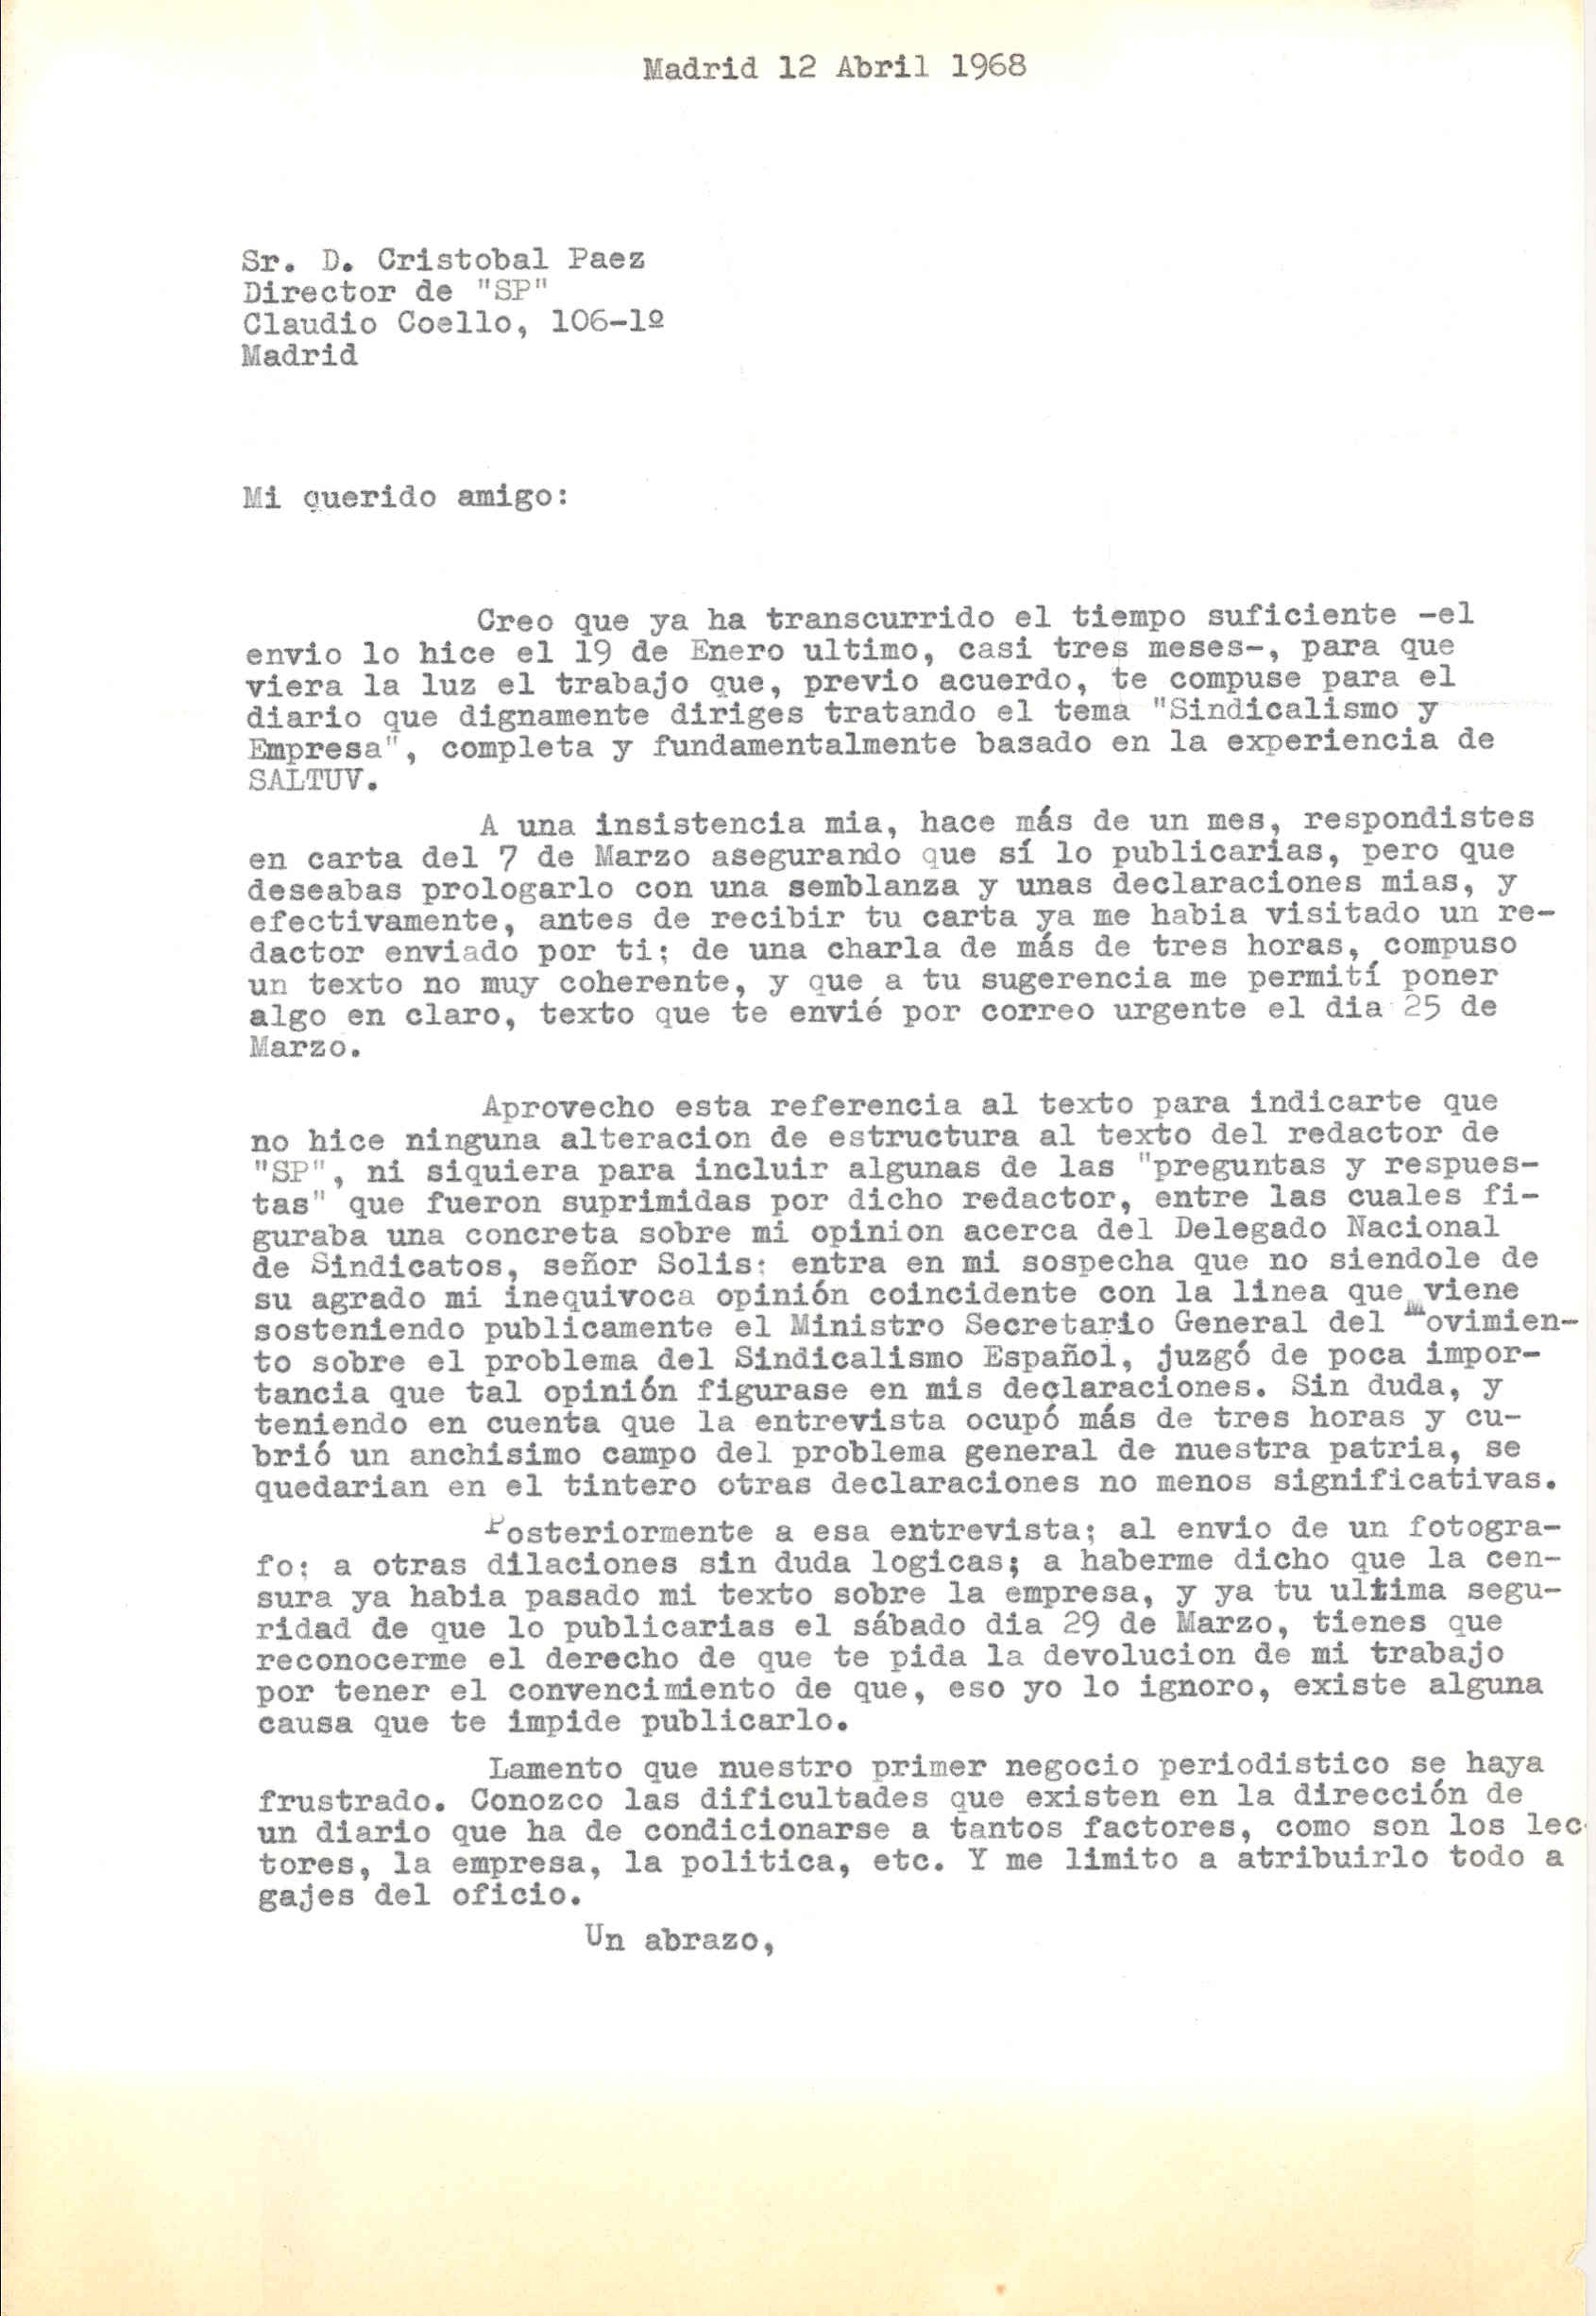 Carta a Cristóbal Páez, director del Diario SP, en que comenta la larga entrevista que le realizó un redactor de su periódico y en la que le pide que le sea devuelto su artículo 